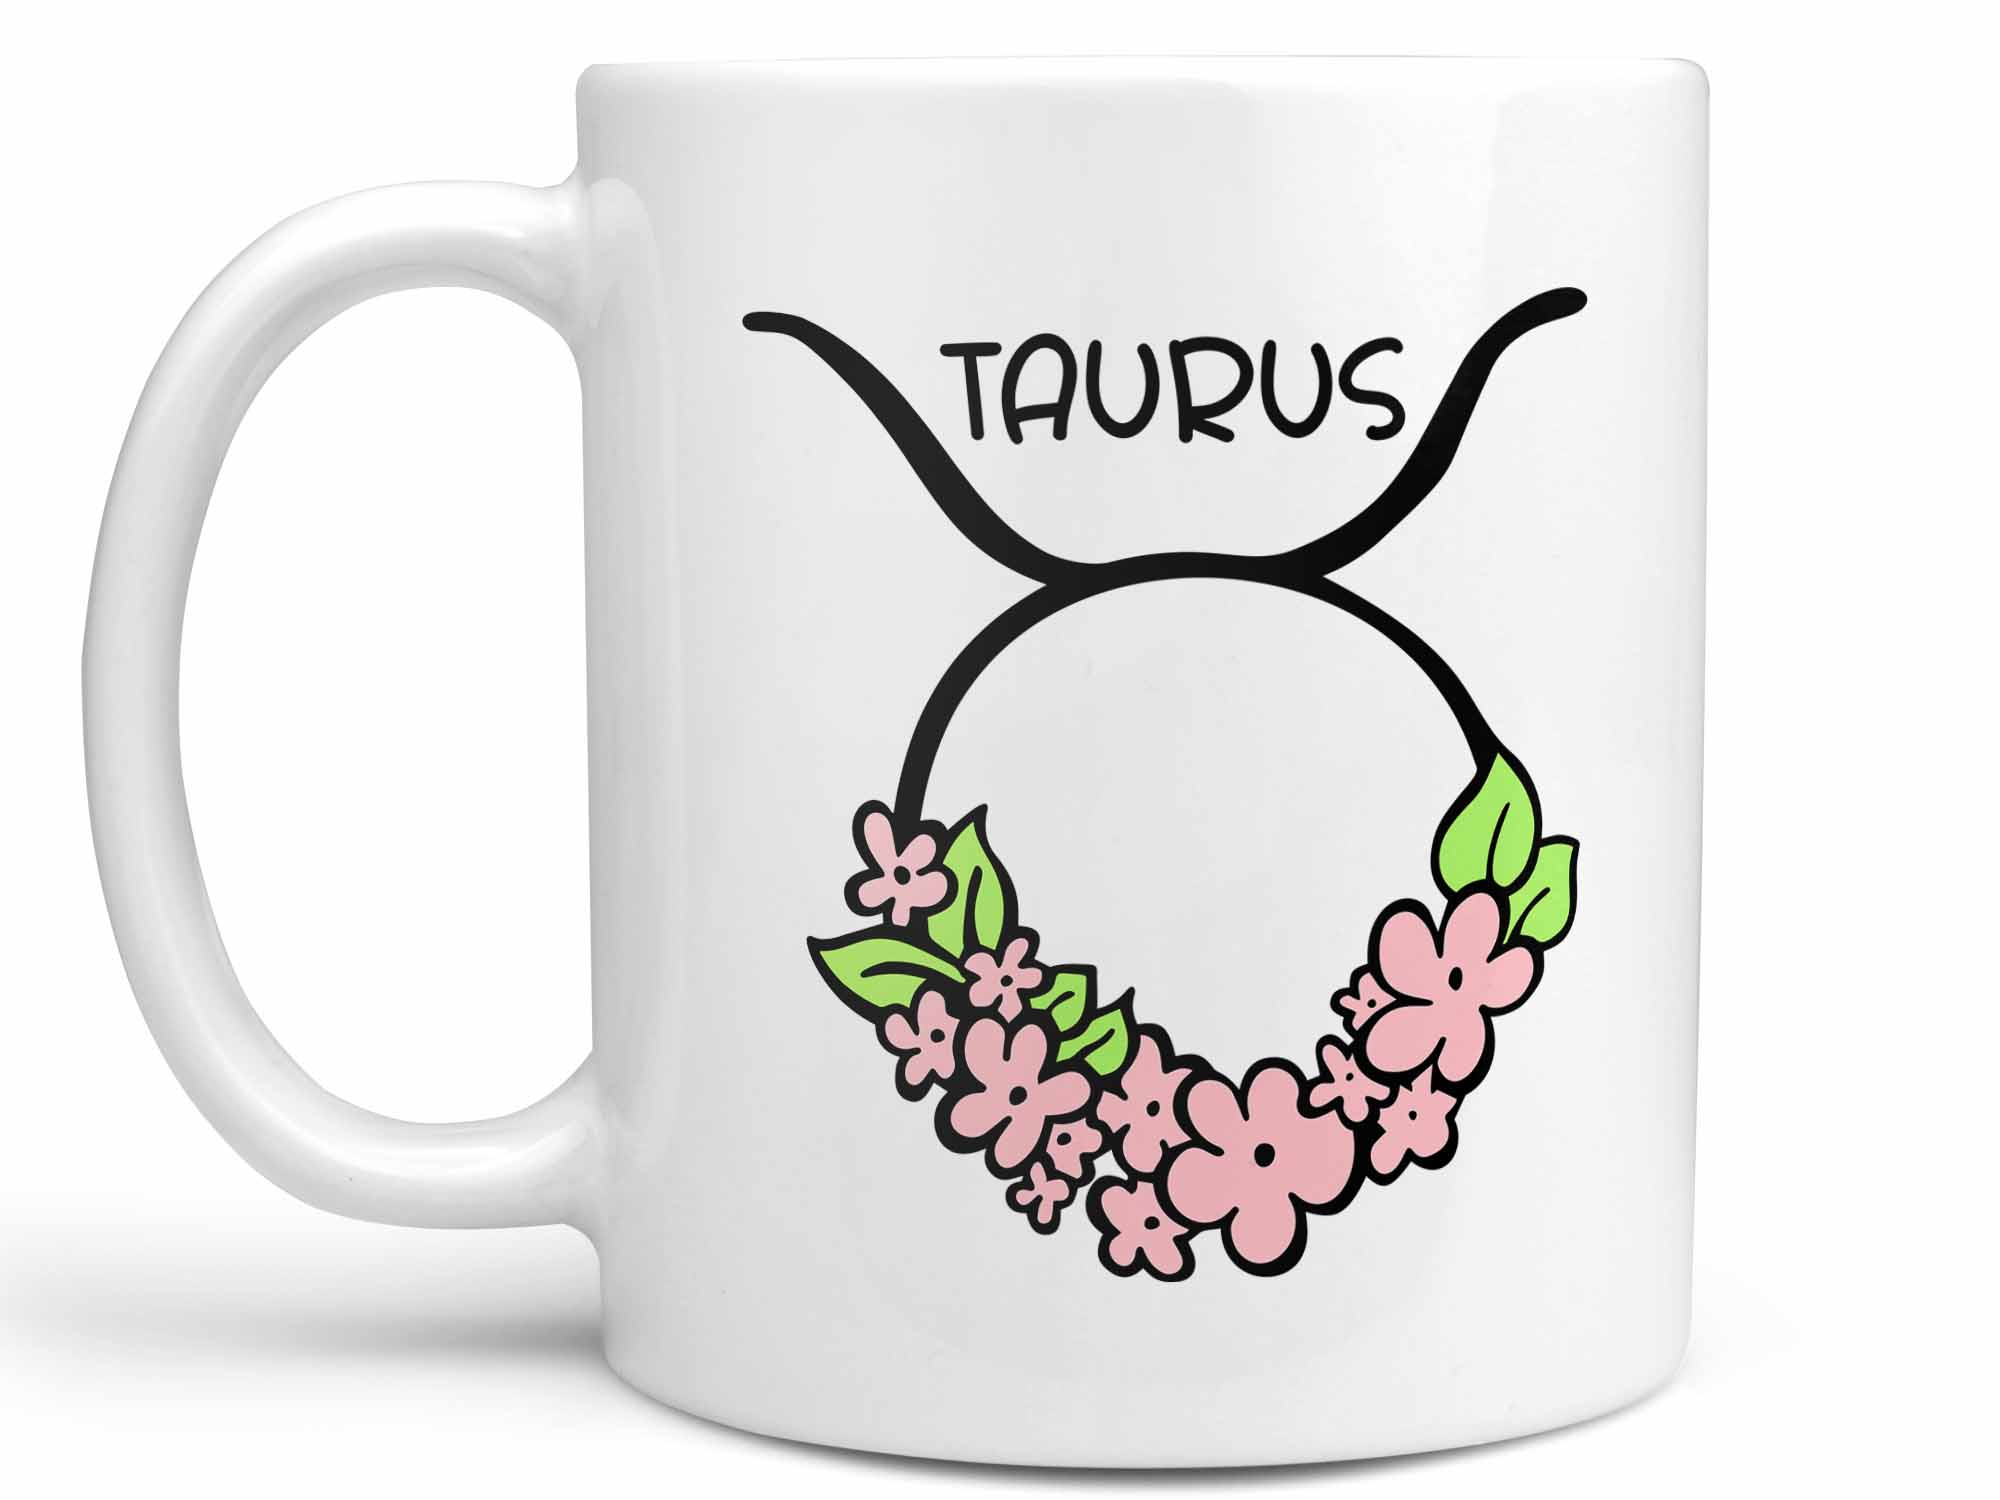 Taurus Flower Coffee Mug